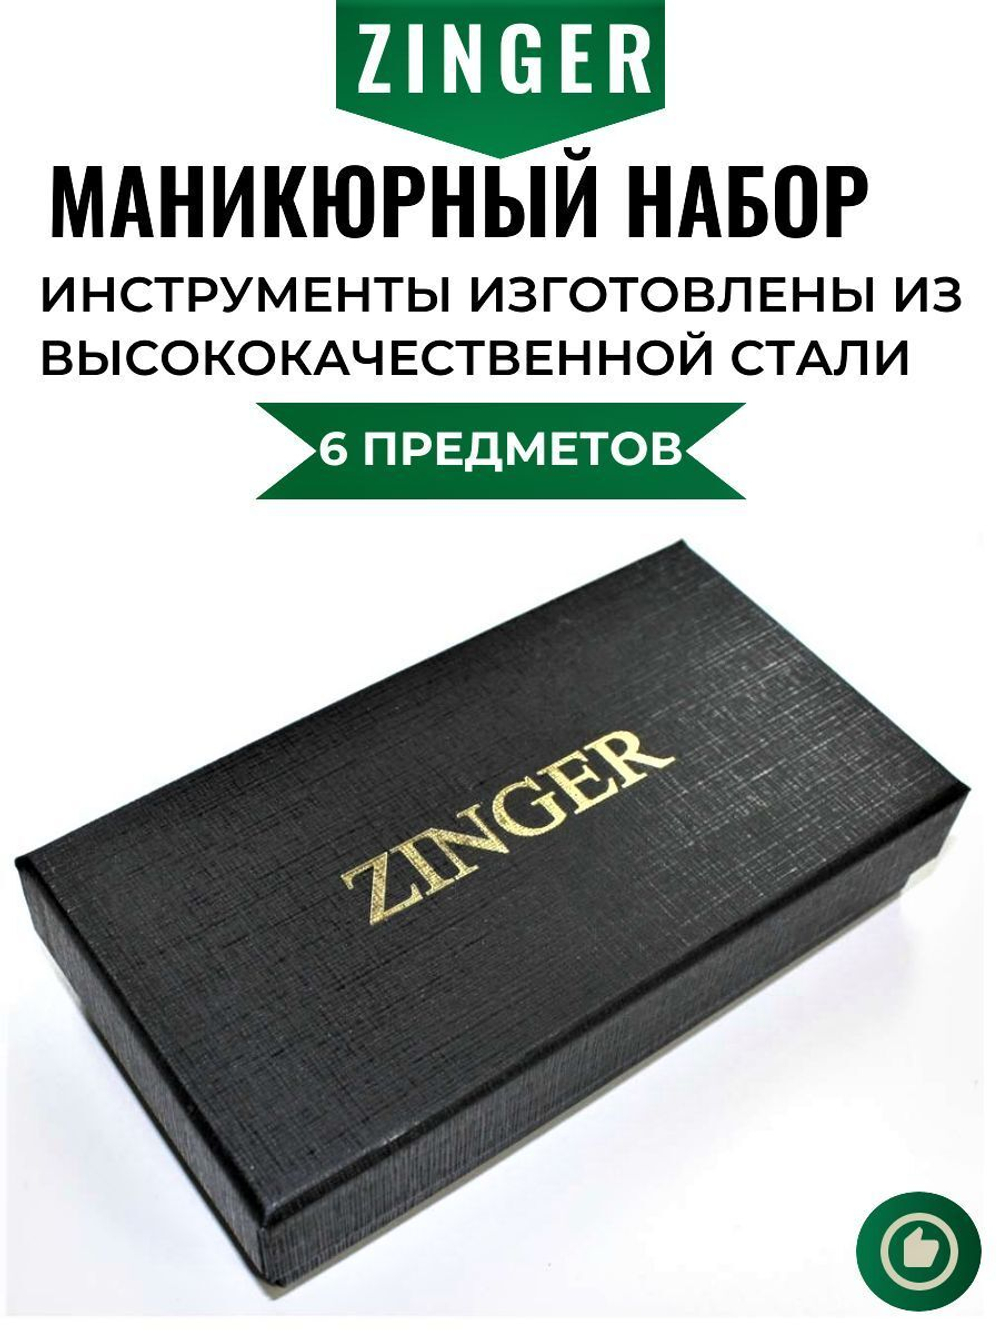 Zinger Маникюрный набор 6 предметов 7104 S, футляр на молнии / клетчатый